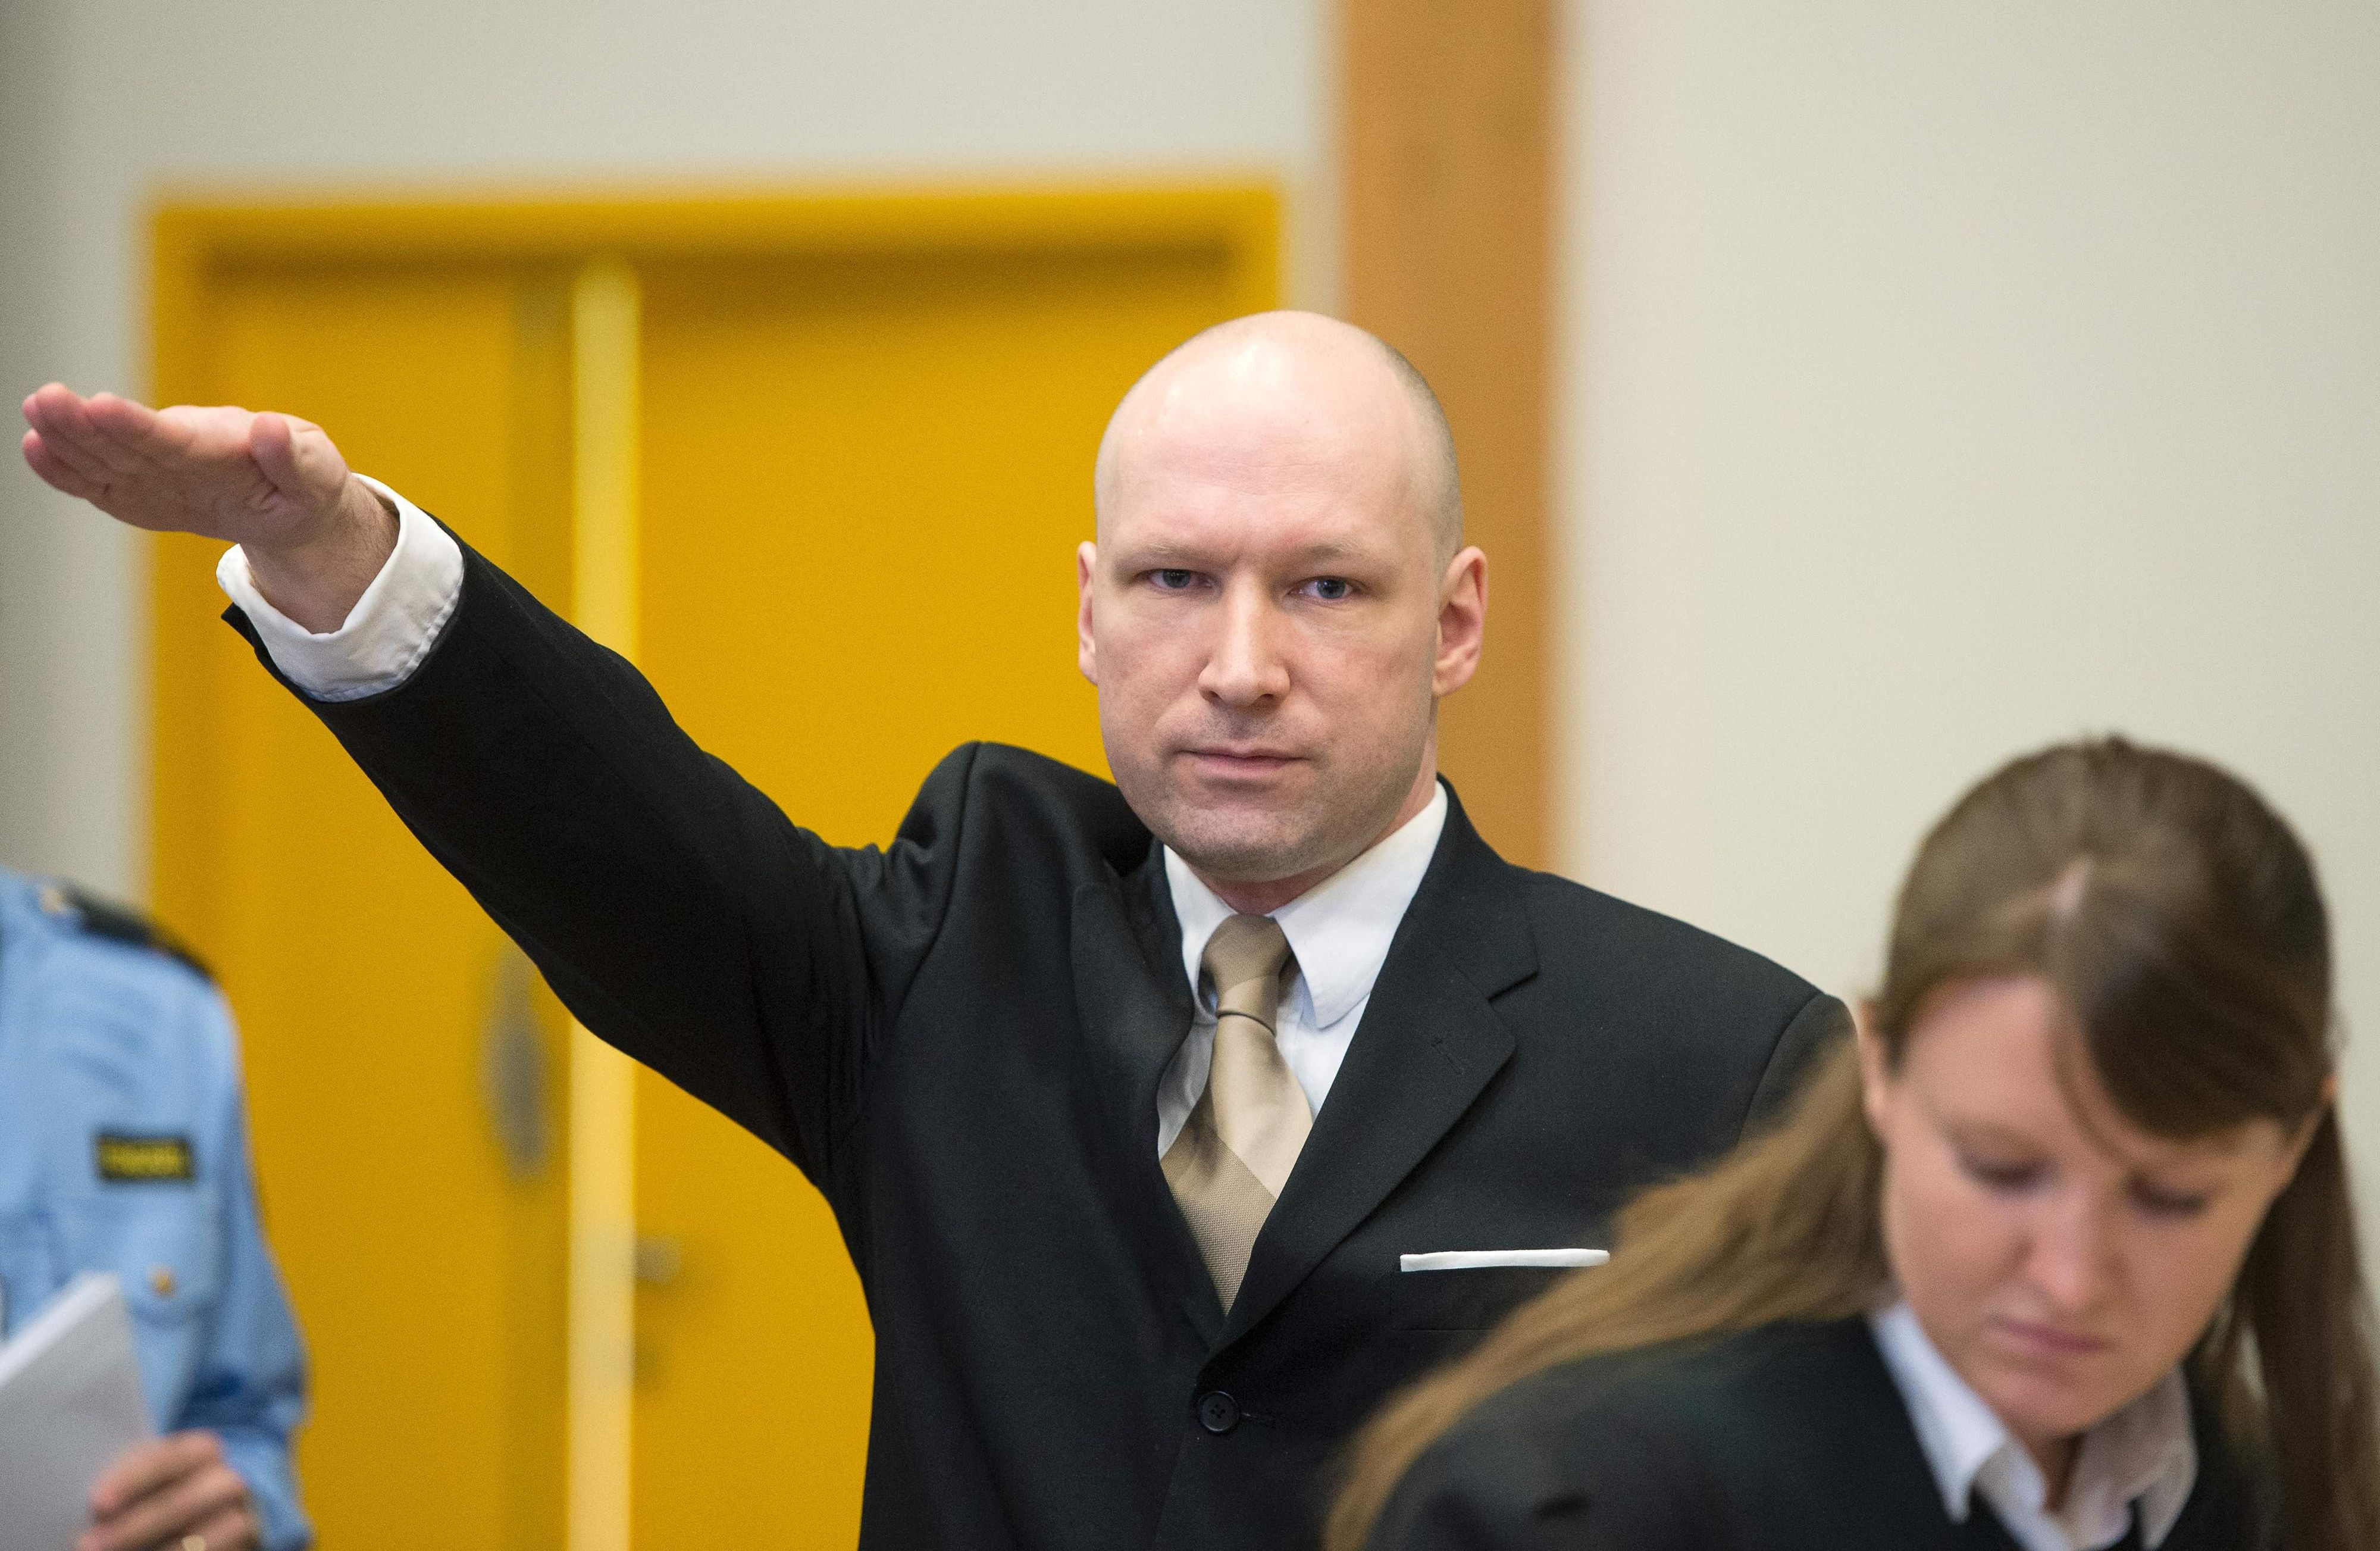 L'extrémiste Breivik a perdu son procès contre l'État